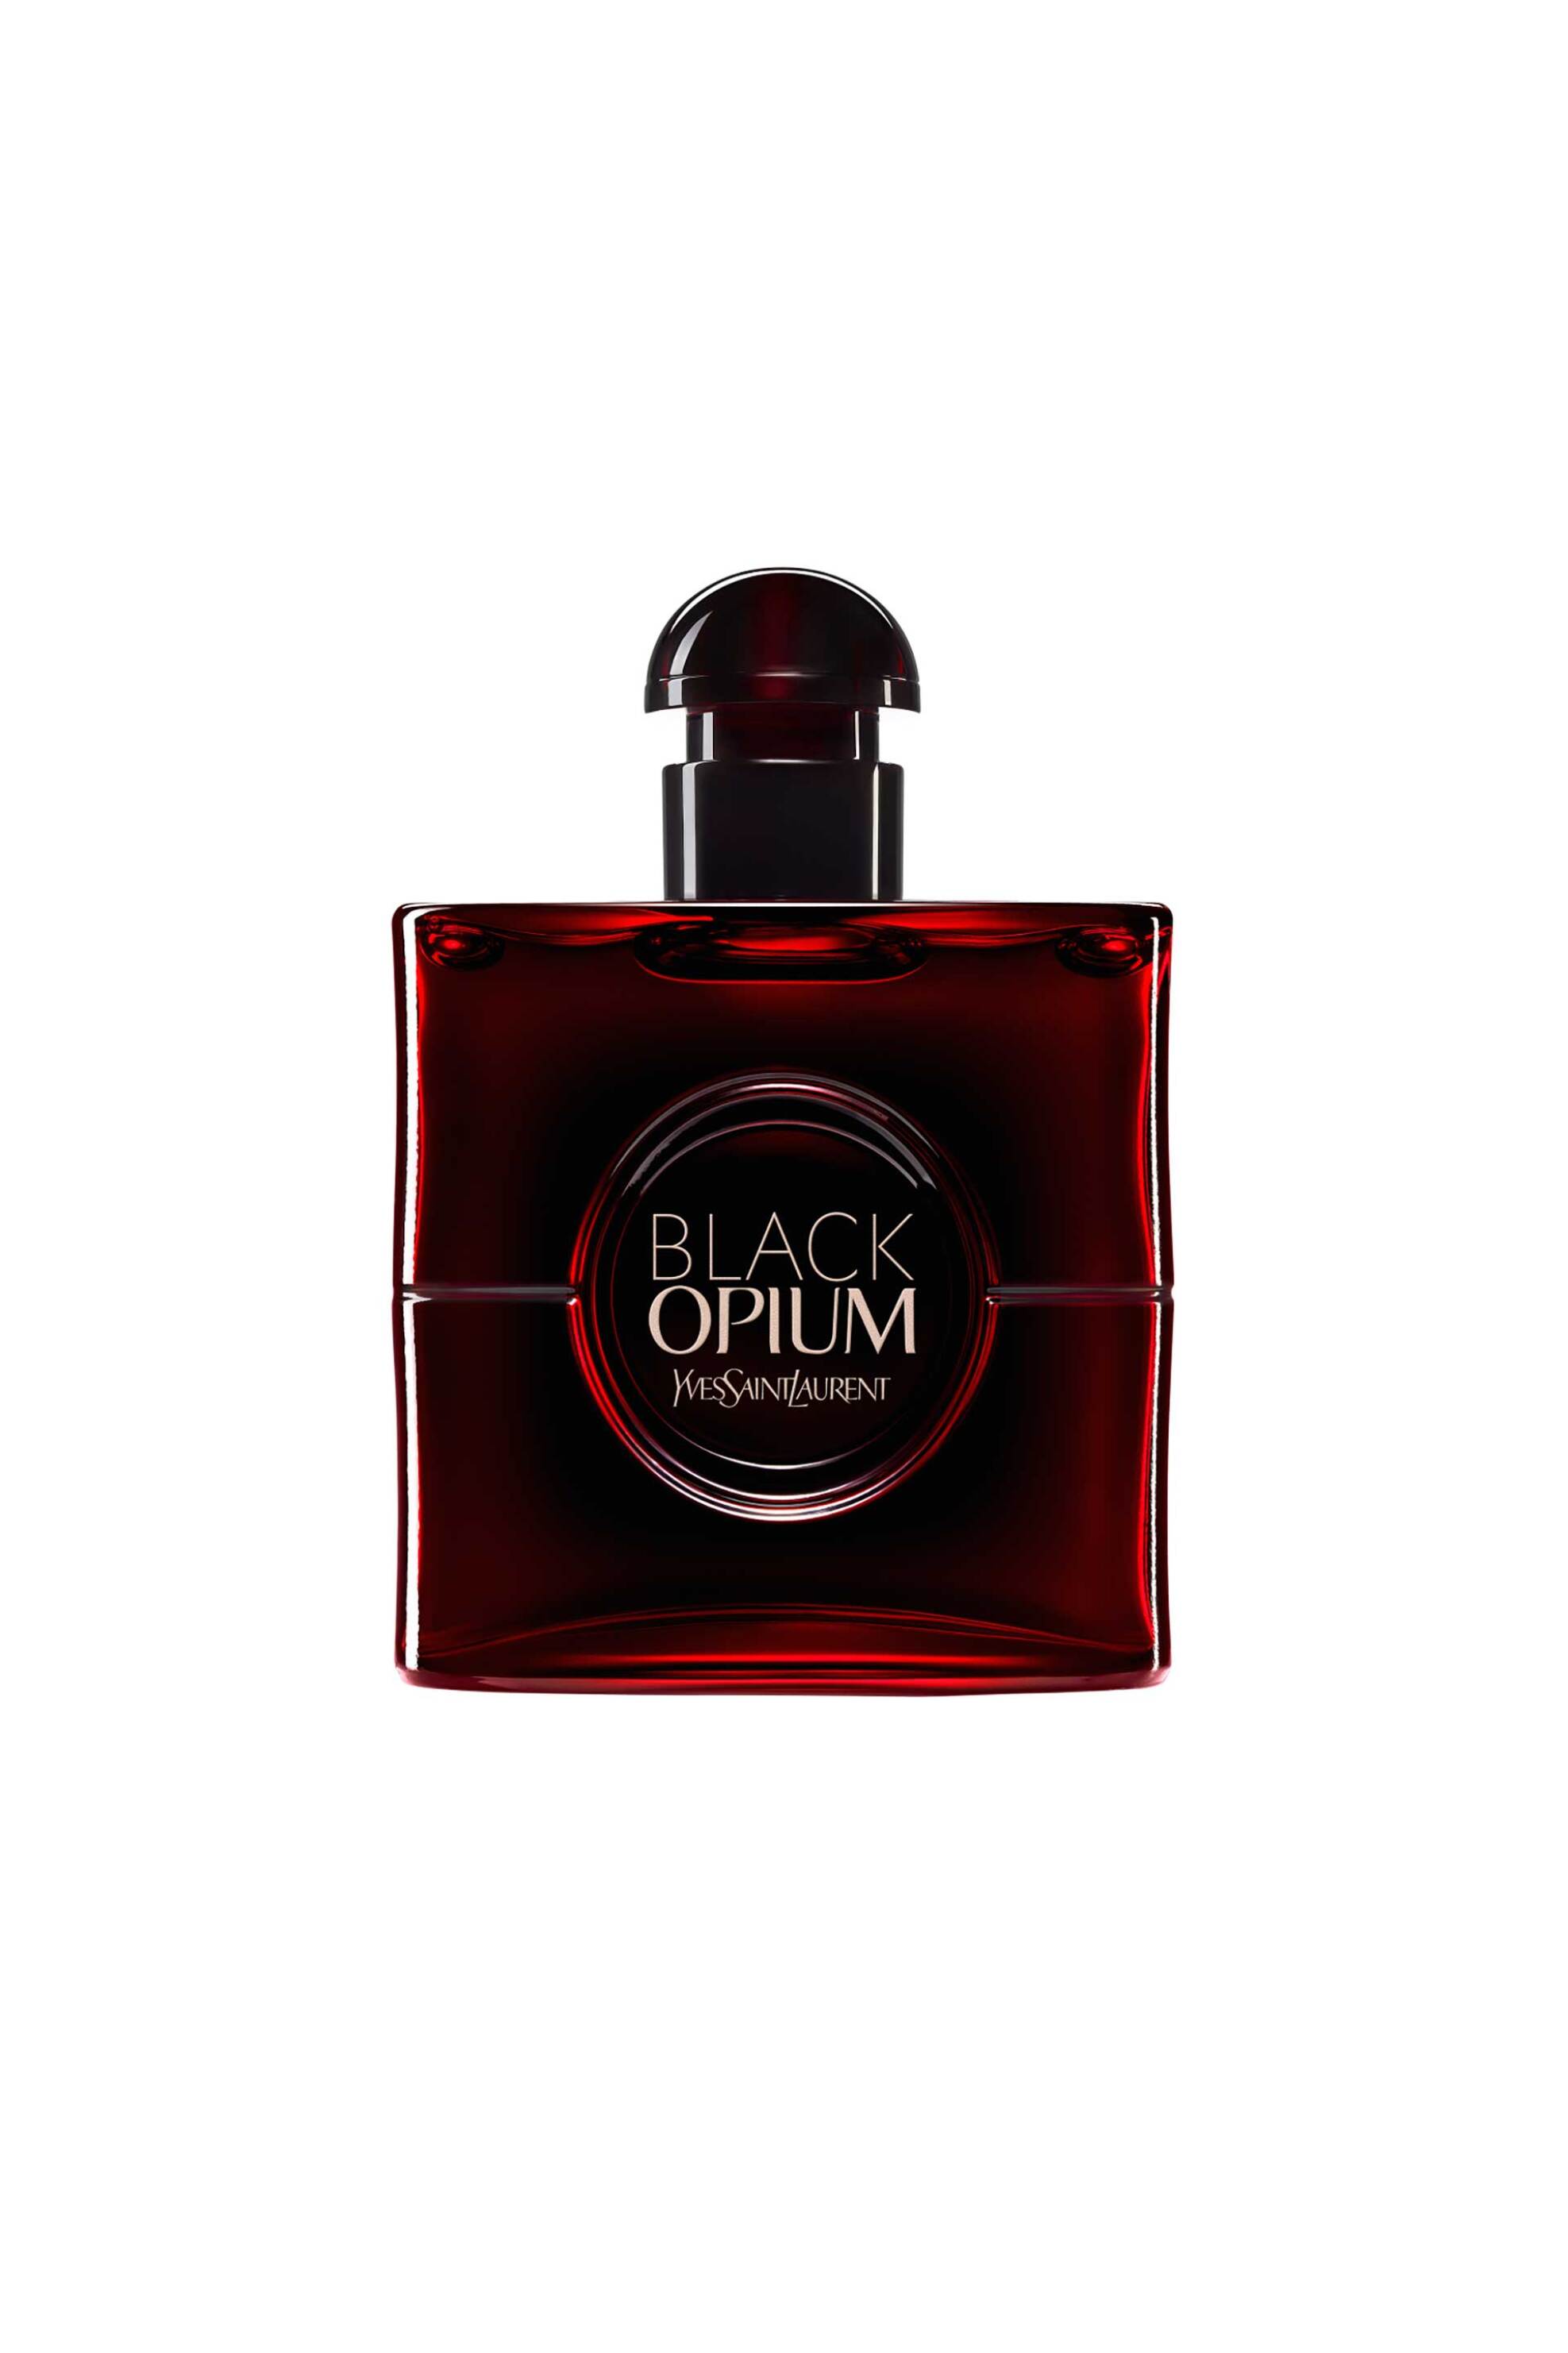 Yves Saint Laurent Black Opium Eau de Parfum Over Red - 3614274076585